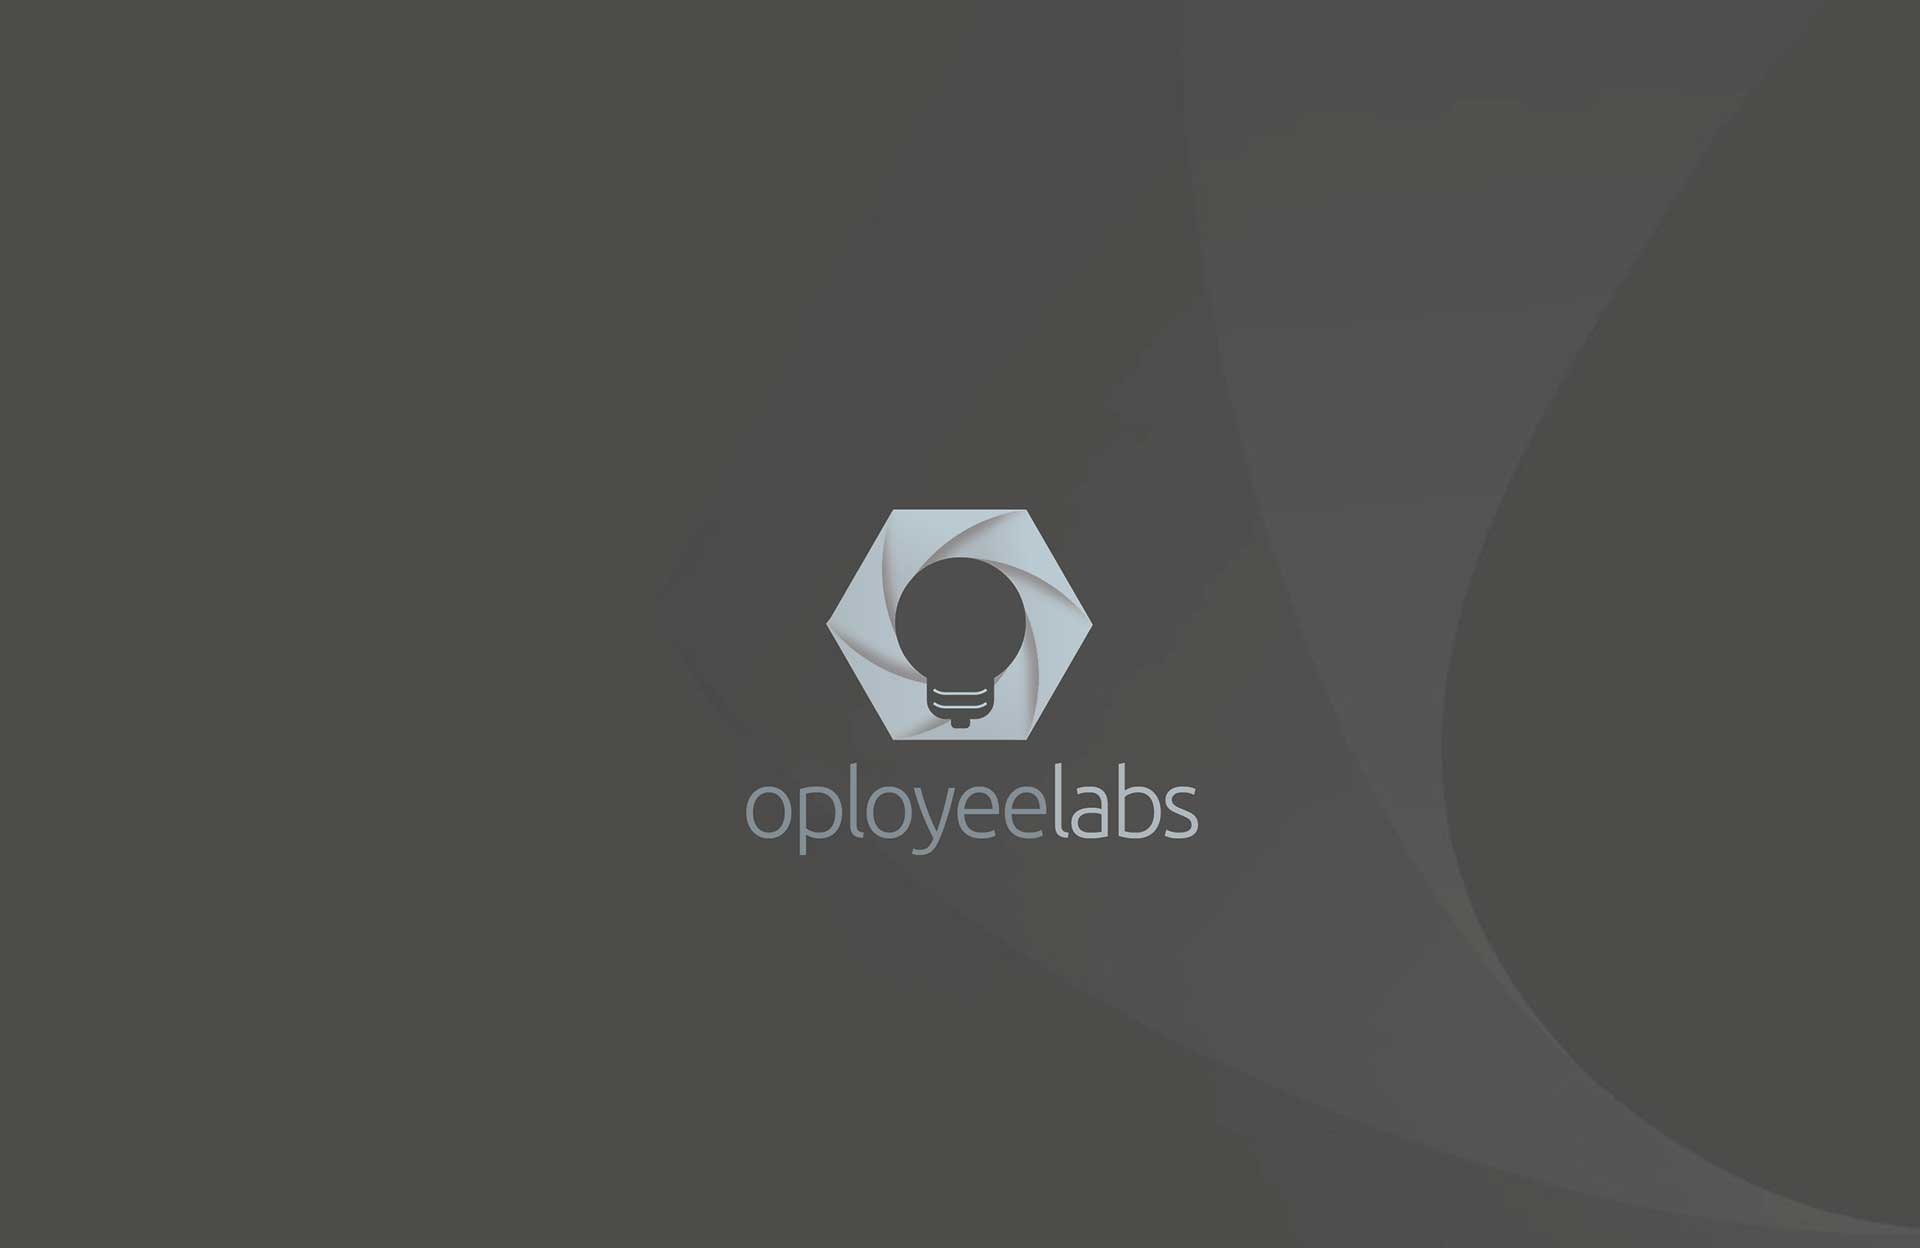 Oployeelabs-Logo-03-03